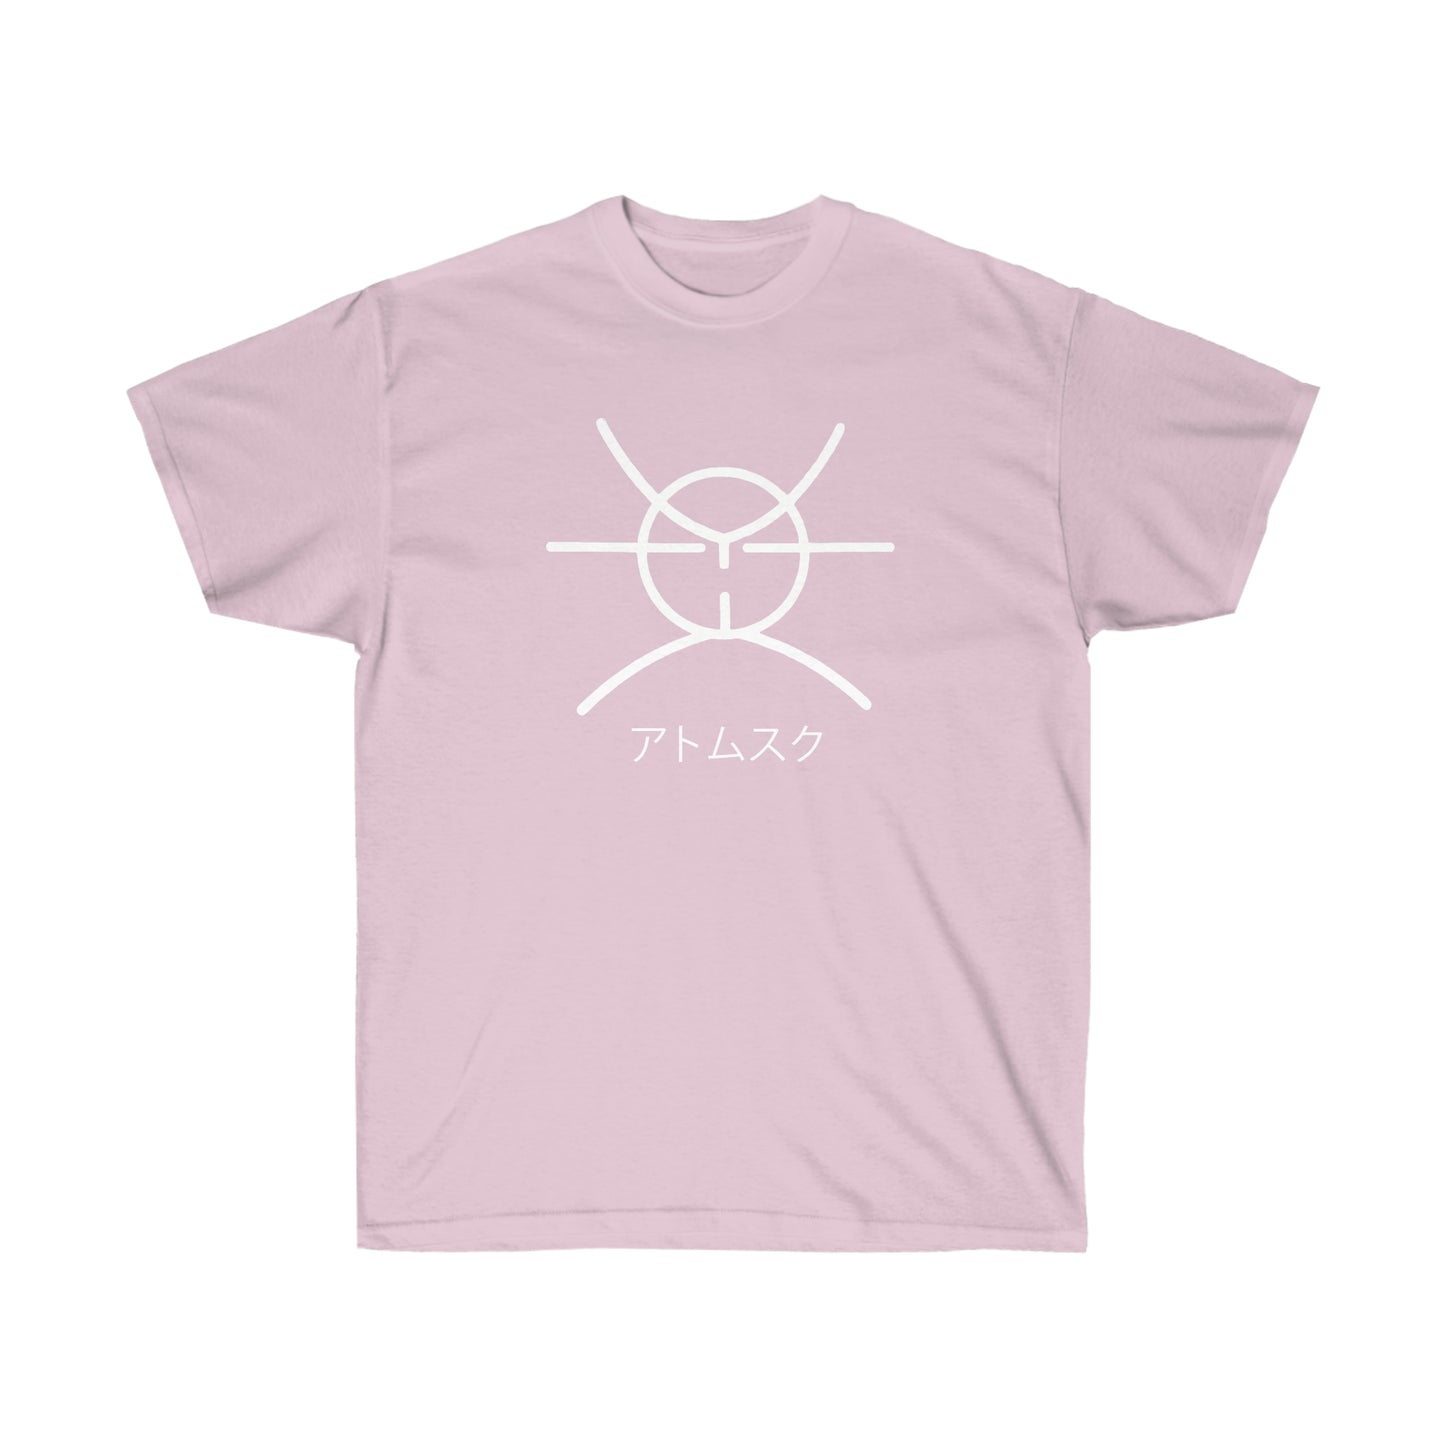 Atomsk shirt Symbol t-shirt